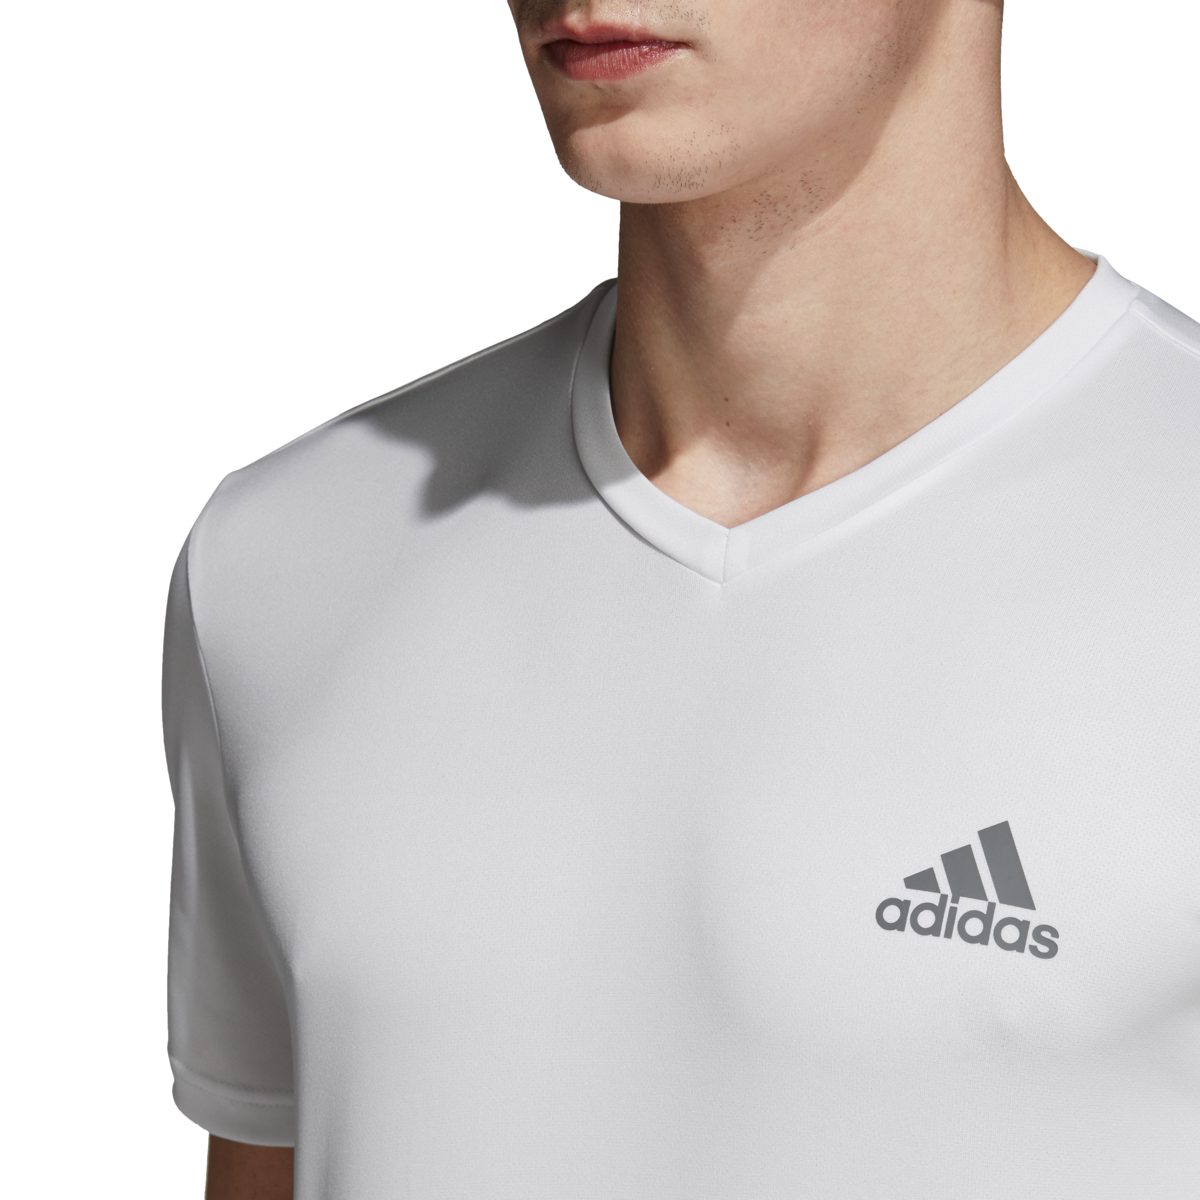 adidas Men's Training Essentials T- Shirt White Size Medium - image 4 of 6